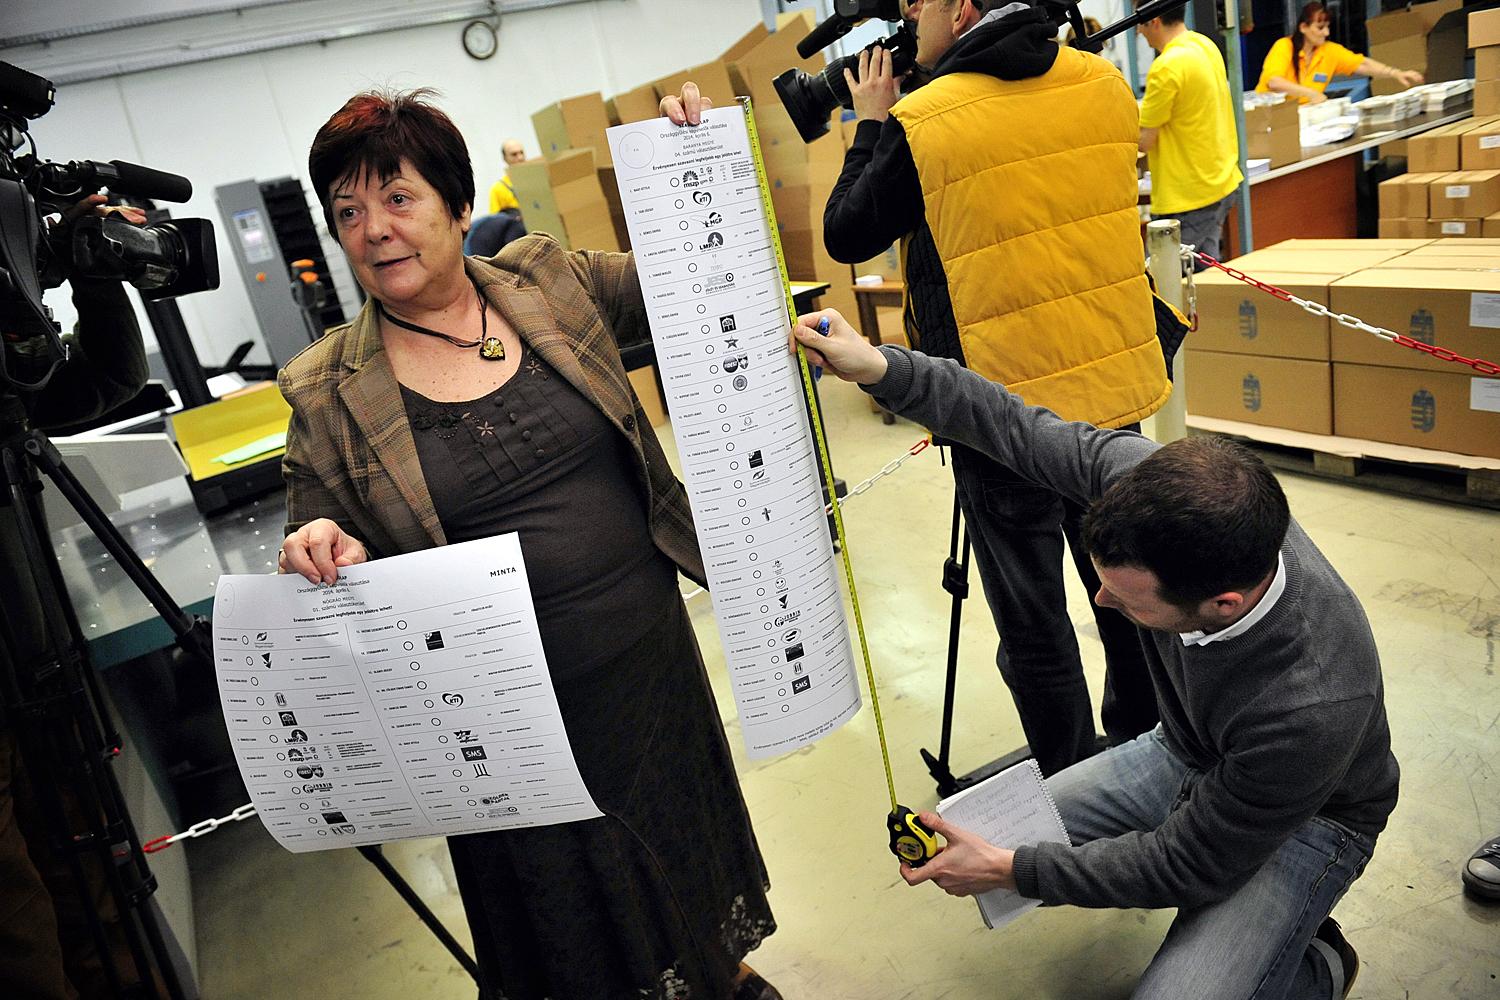 Pálffy Ilona, a Nemzeti Választási Iroda vezetője mutatja be a szavazólapokat, amelyeket szigorú biztonsági intézkedések mellett már nyomtatnak a fővárosban lévő ÁNY Biztonsági Nyomdában